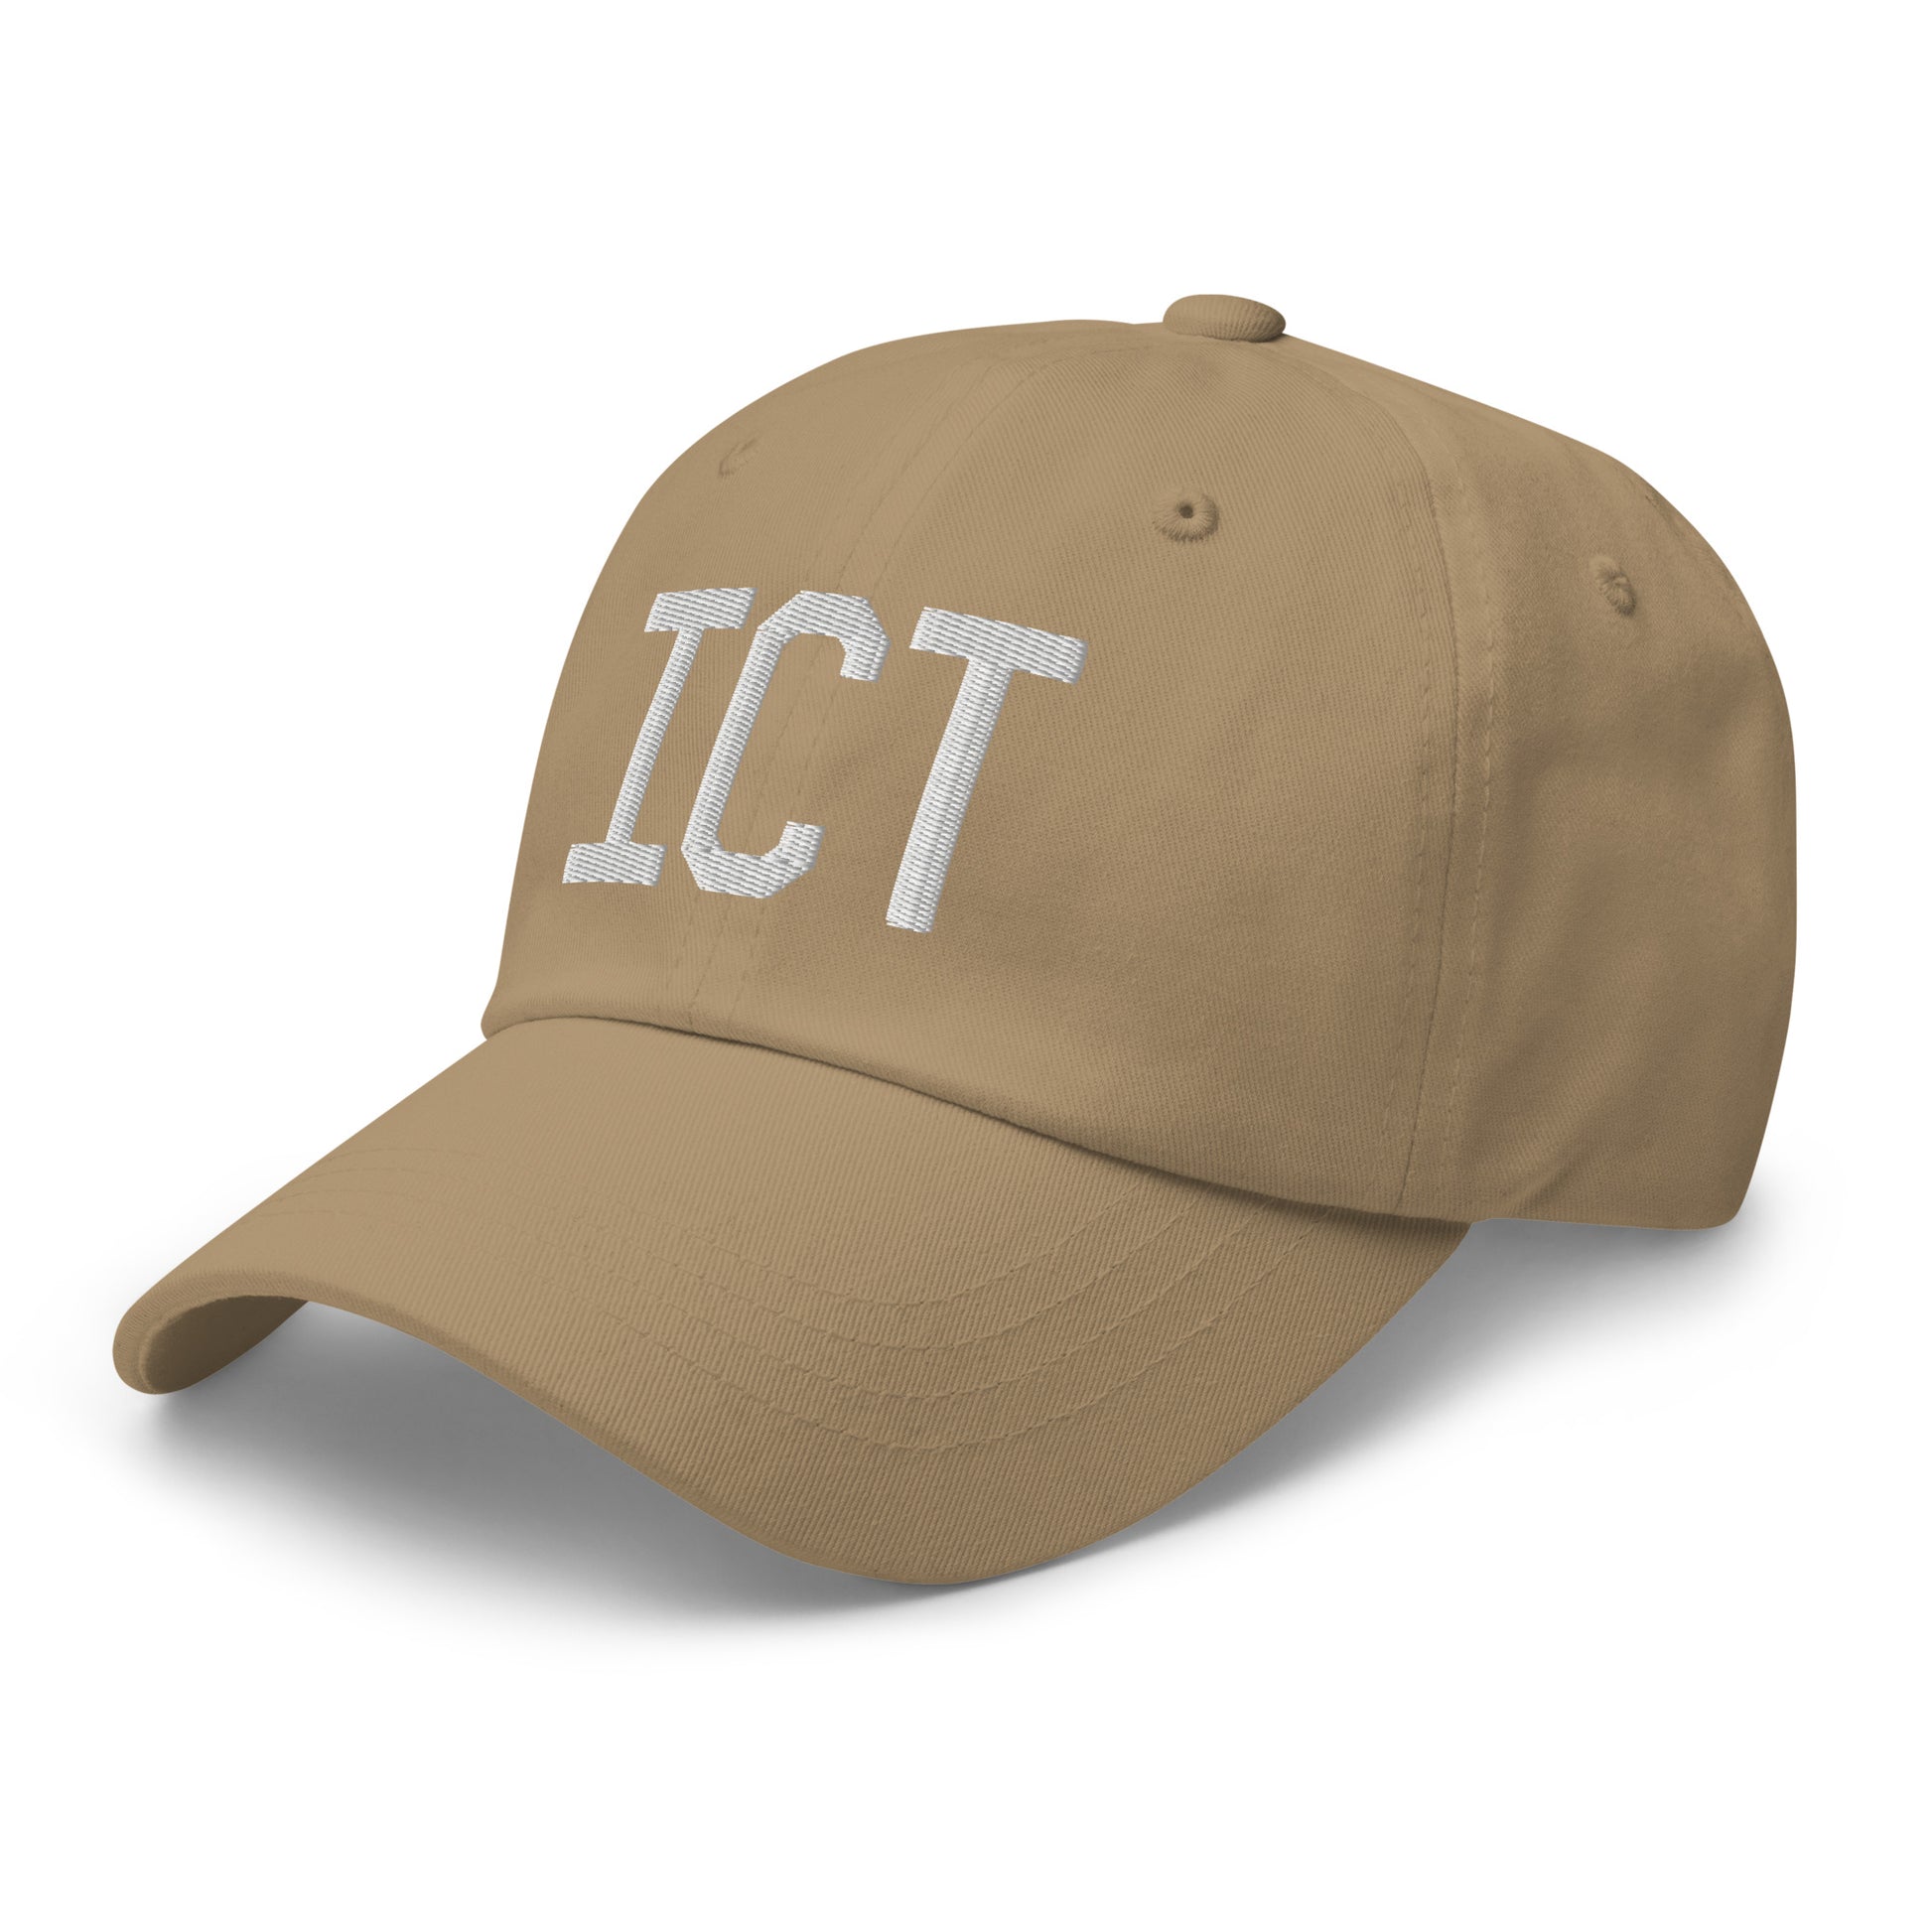 Airport Code Baseball Cap - White • ICT Wichita • YHM Designs - Image 24